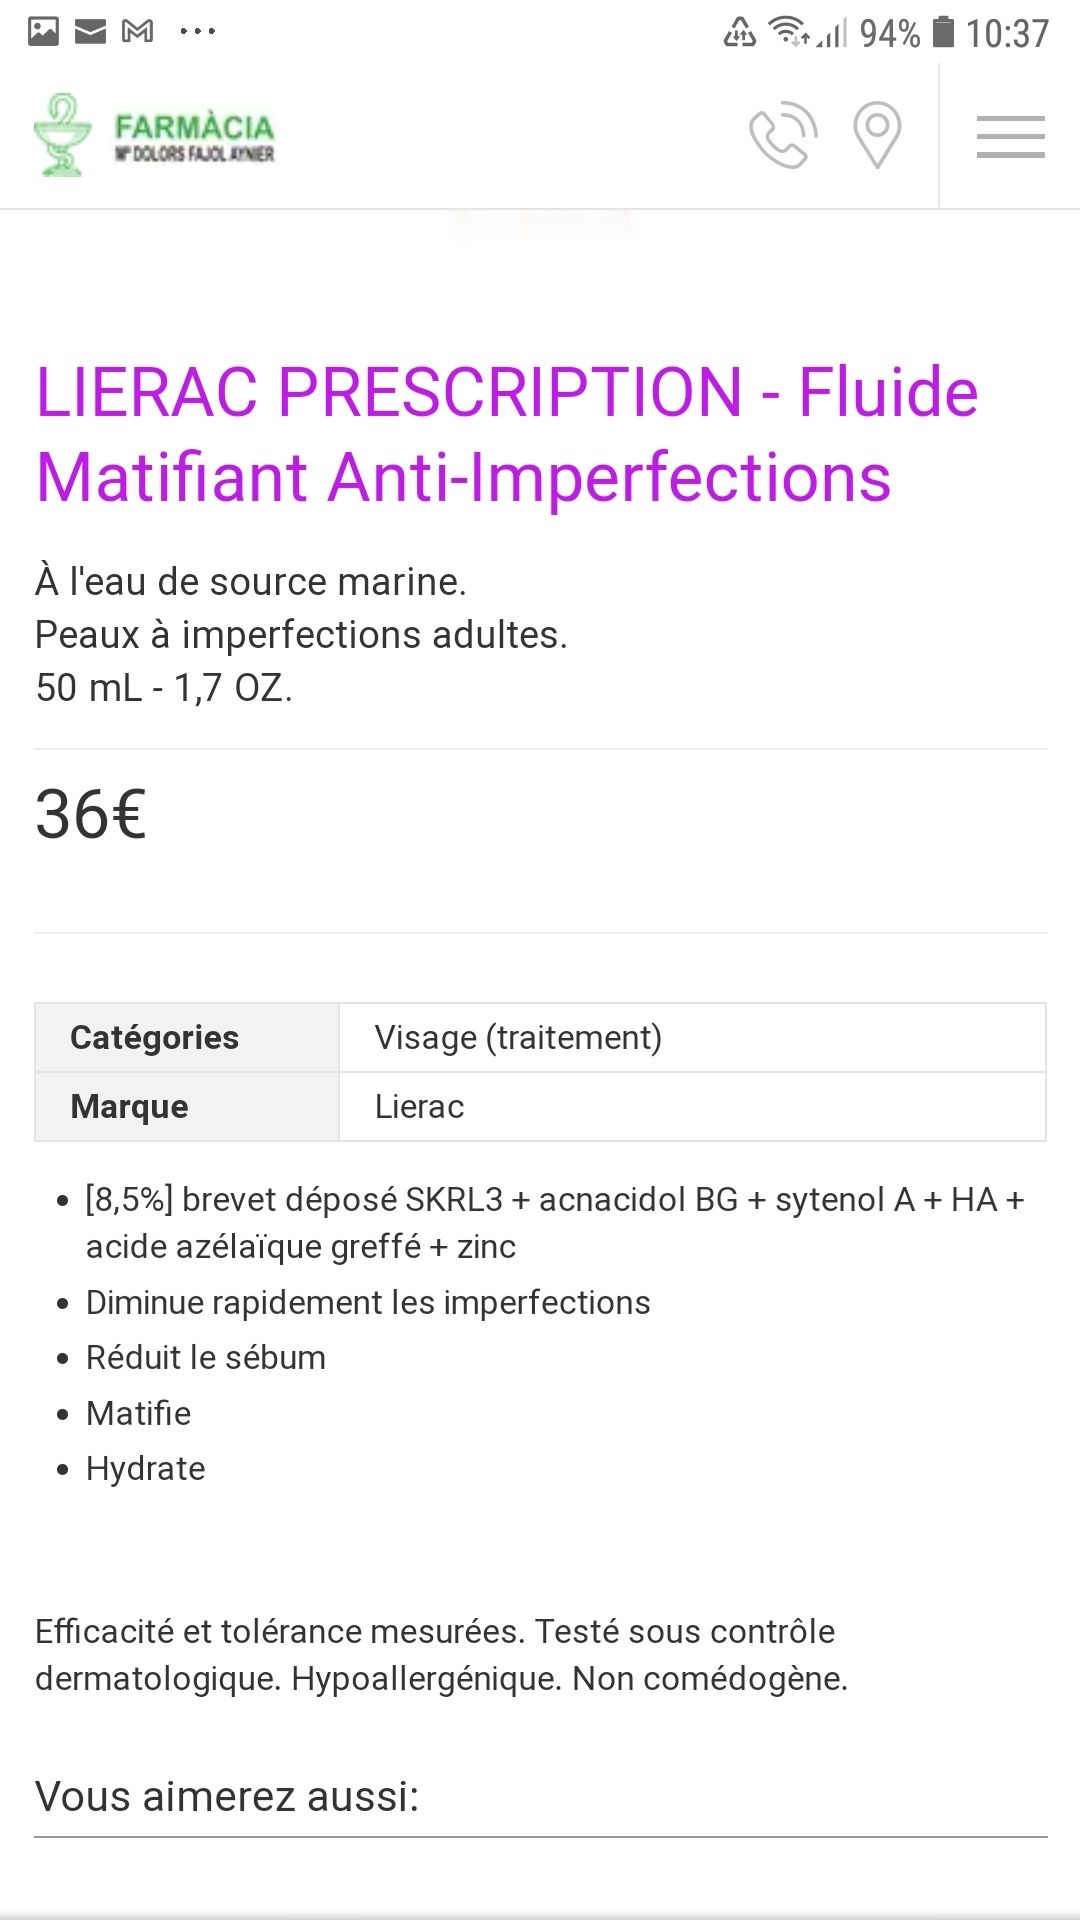 Fluide matifiant anti-imperfections Lierac Paris